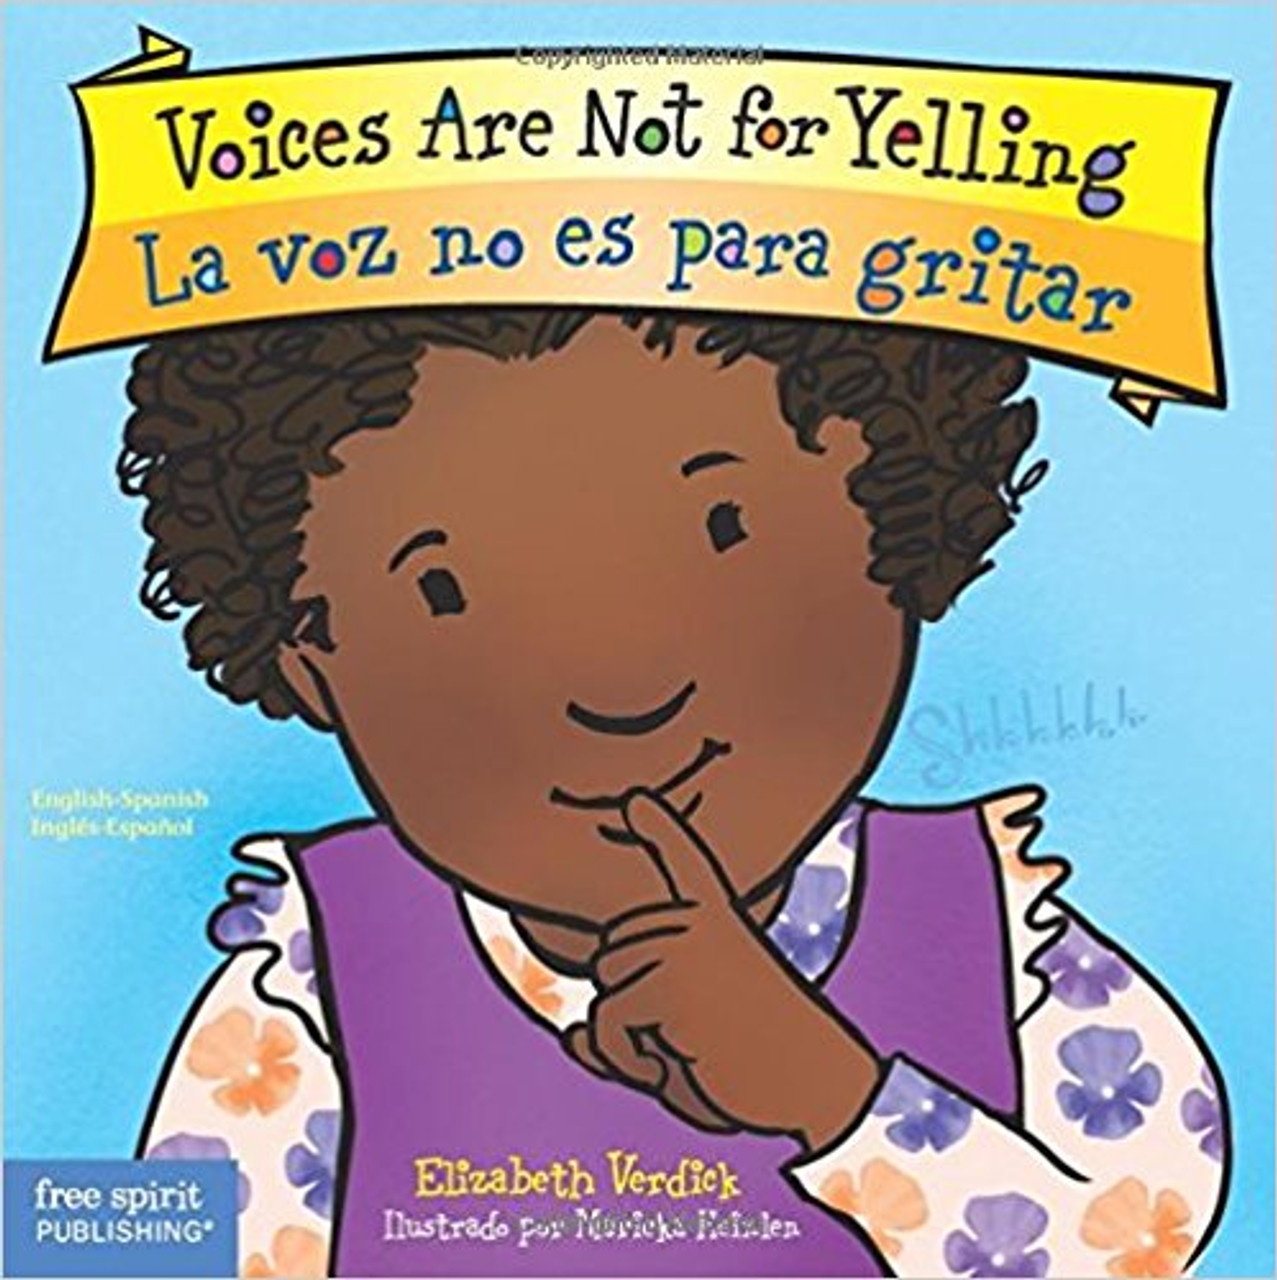 Voice Are Not for Yelling/La Voz No Es para Gritar by Elizabeth Verdick